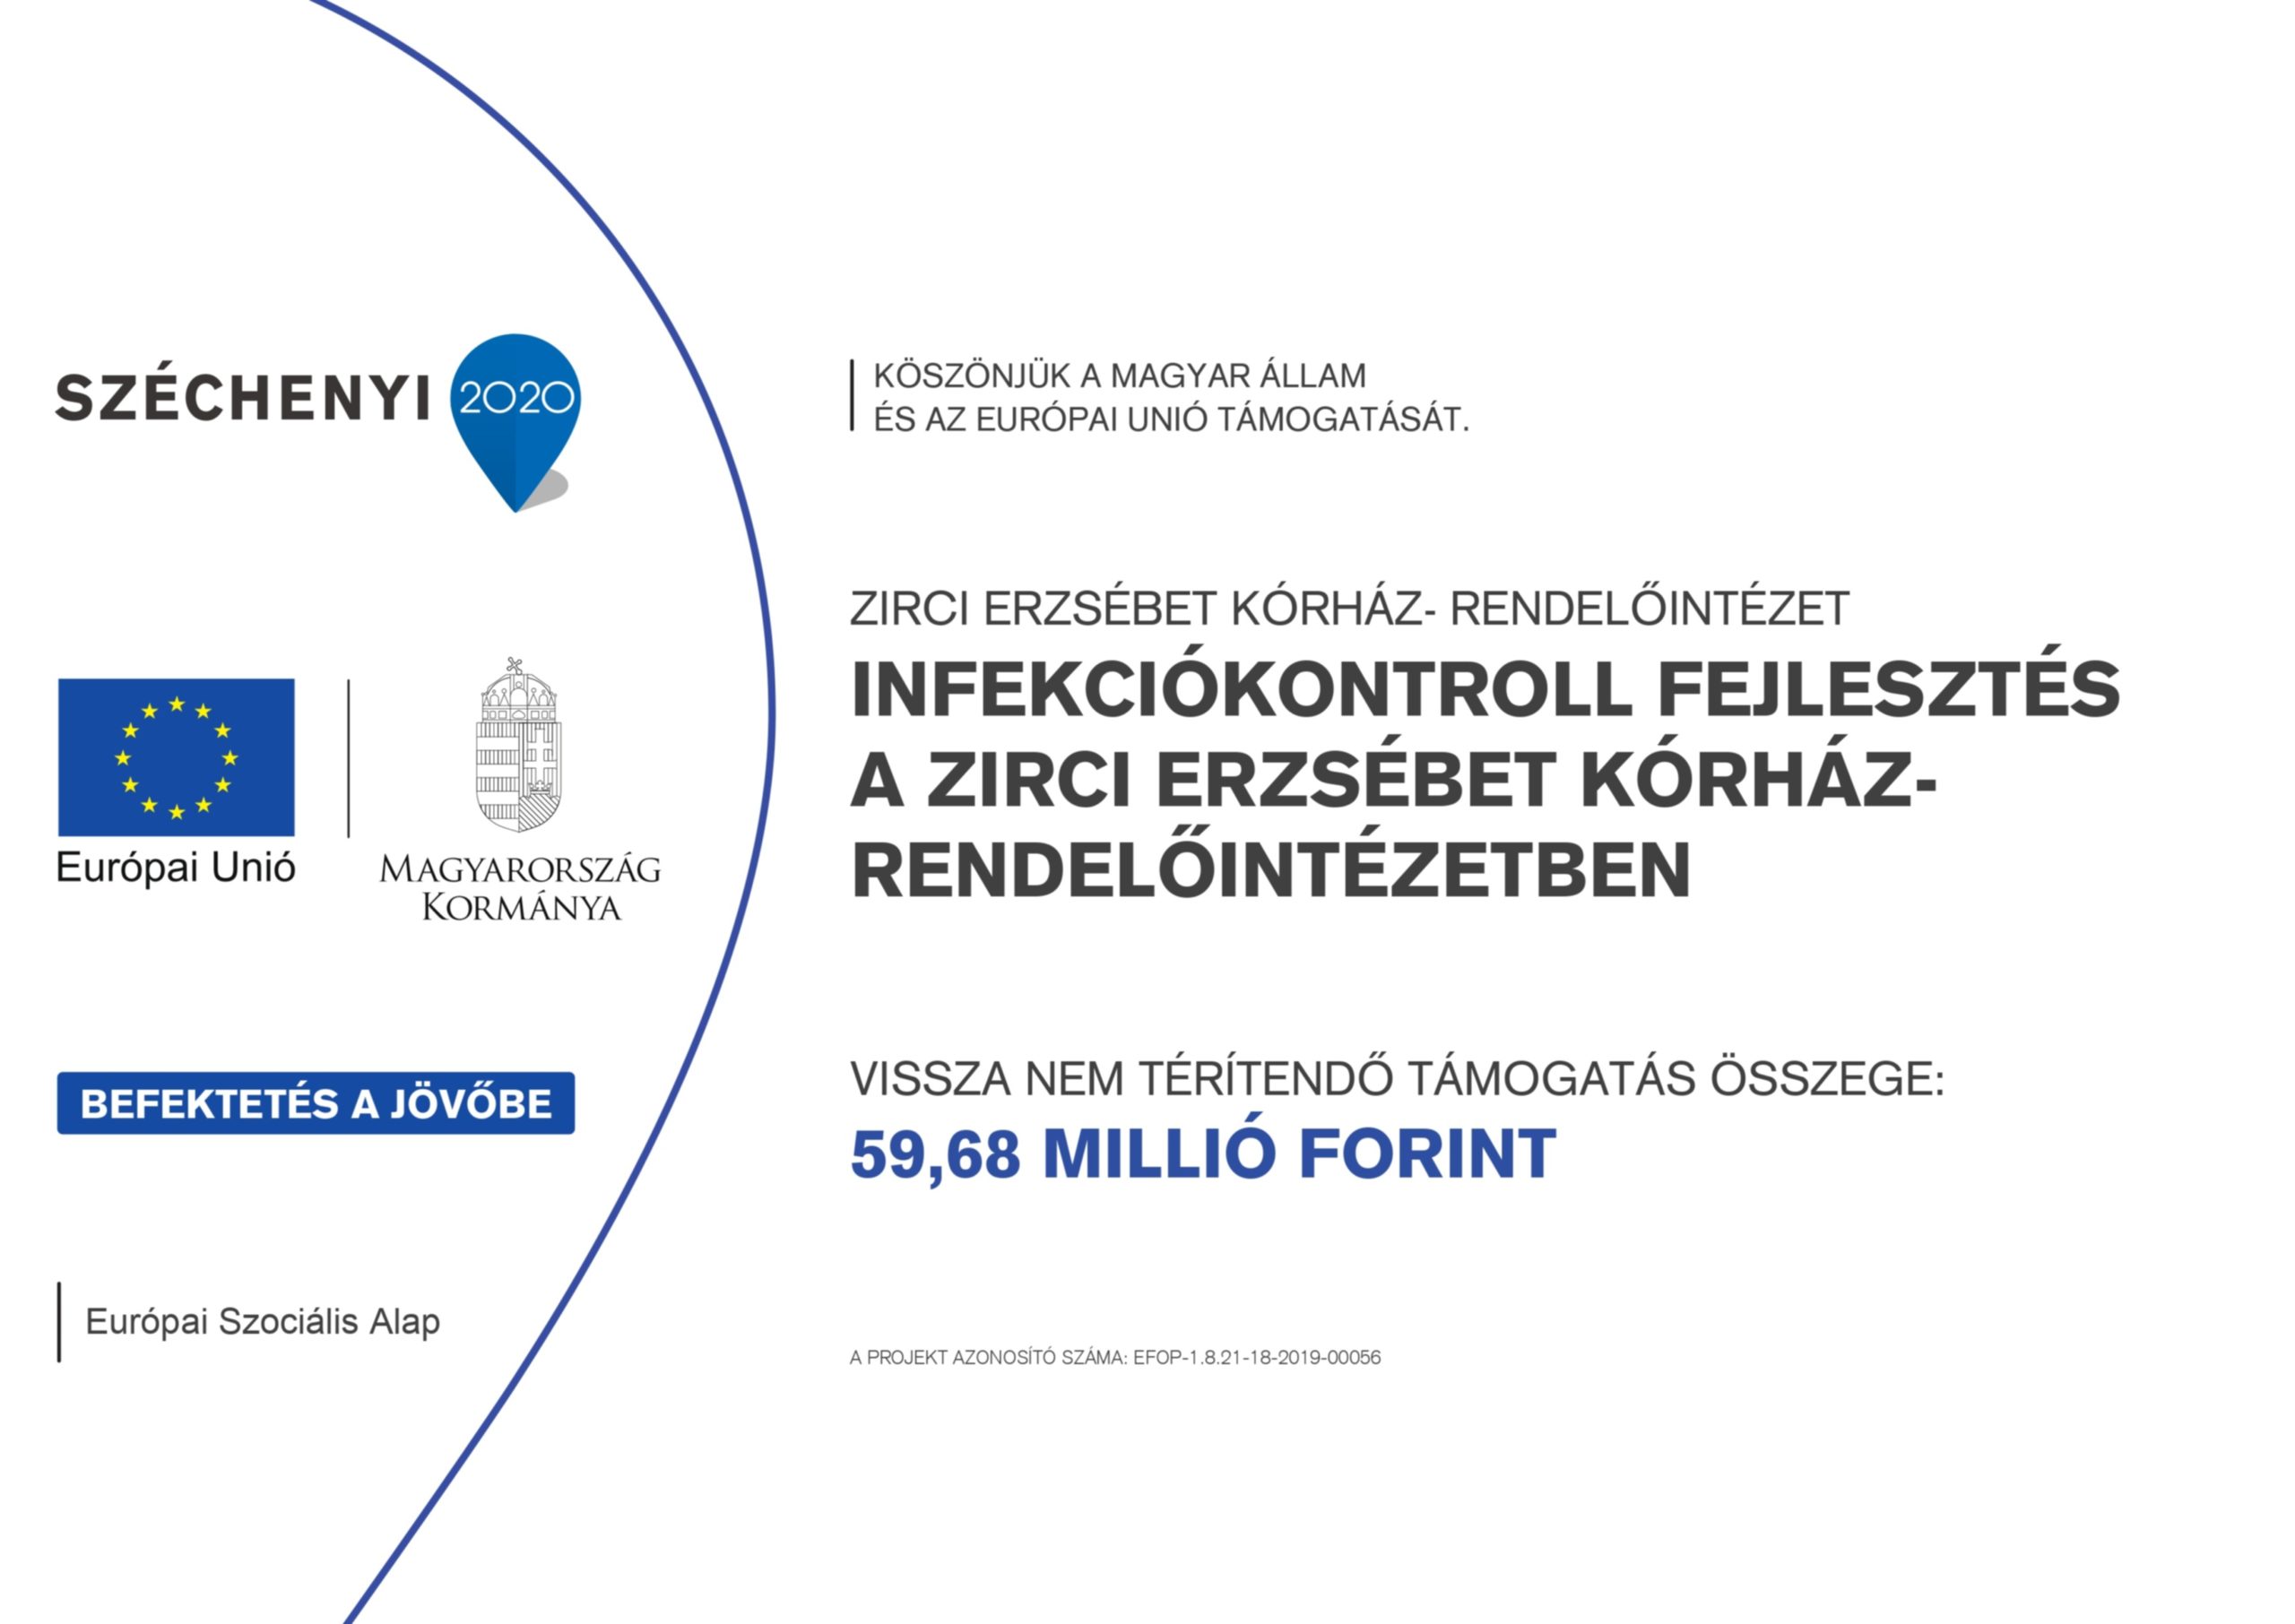 Széchenyi 2020. Infekciókontroll fejlesztés a Zirci Erzsébet Kórház-Rendelőintézetben. Vissza nem térítendő támogatás összege: 59,68 millió forint. Köszönjük a Magyar Állam és az Európai Unió támogatását.